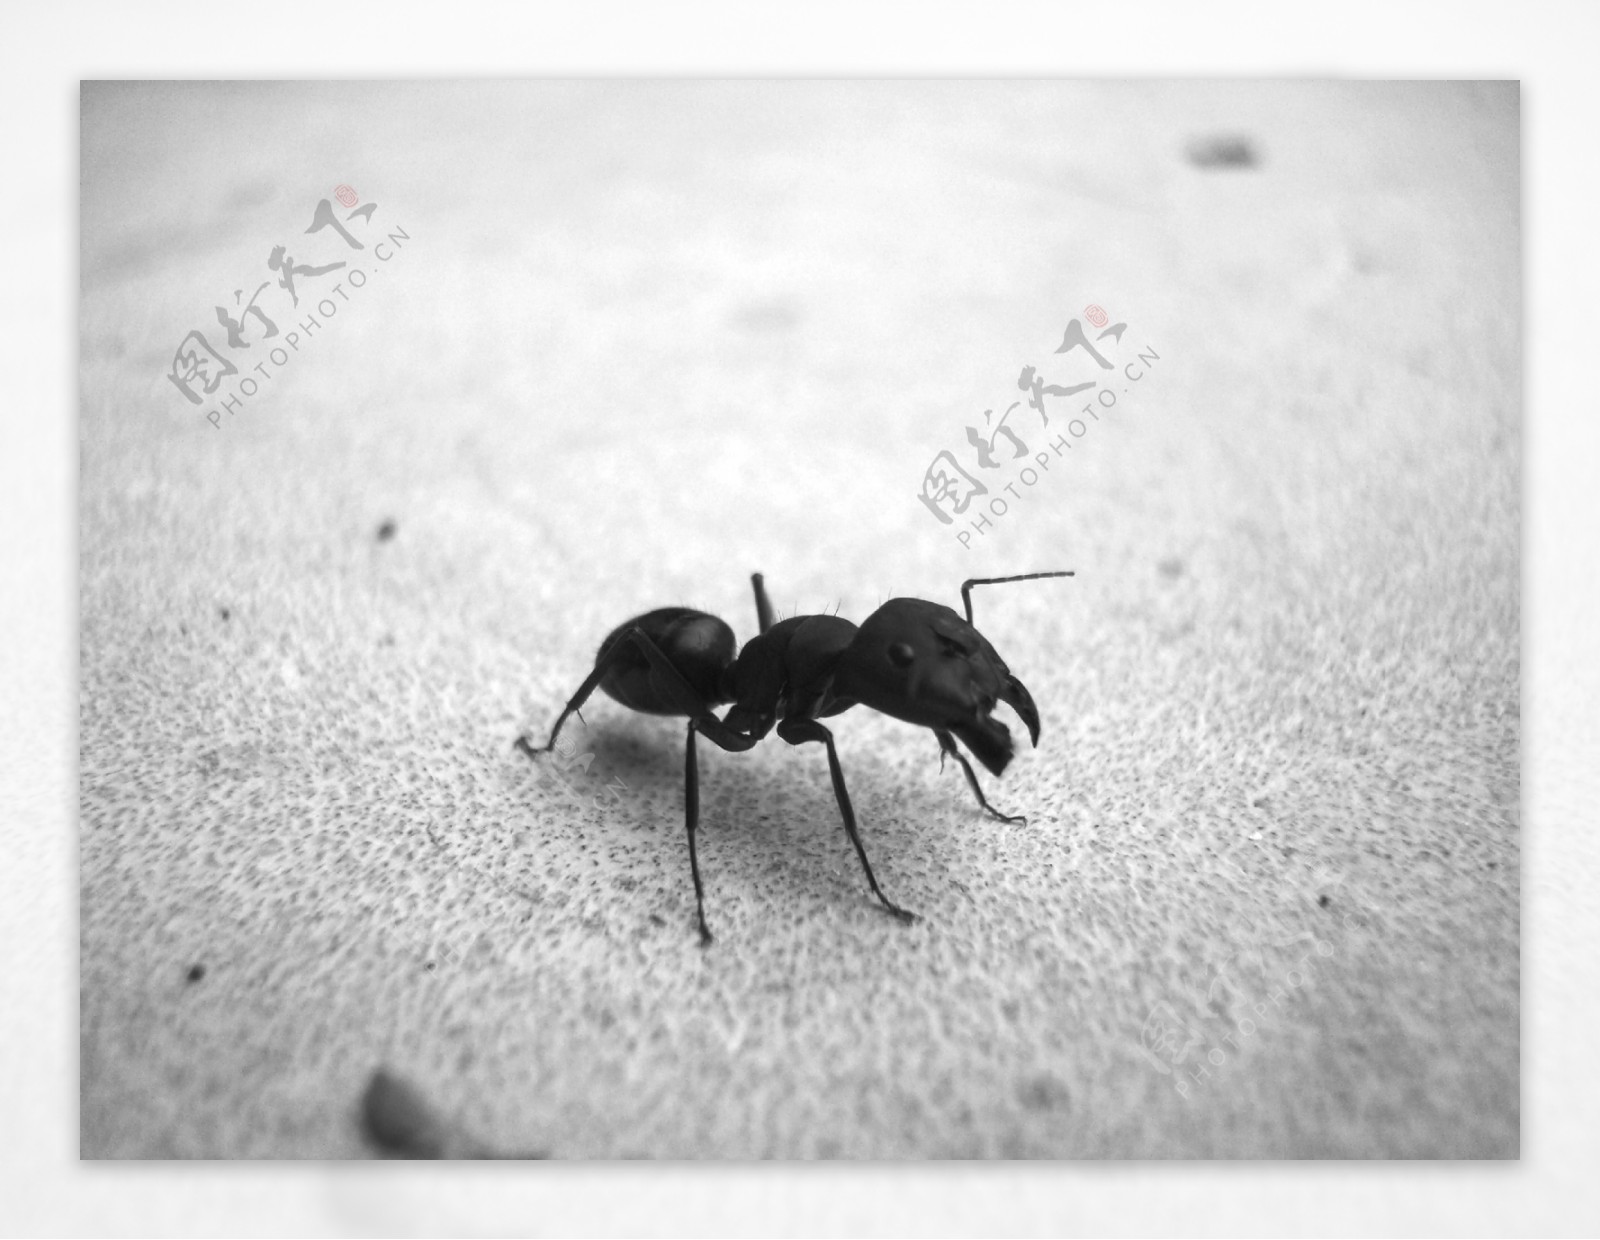 黑色小蚂蚁图片